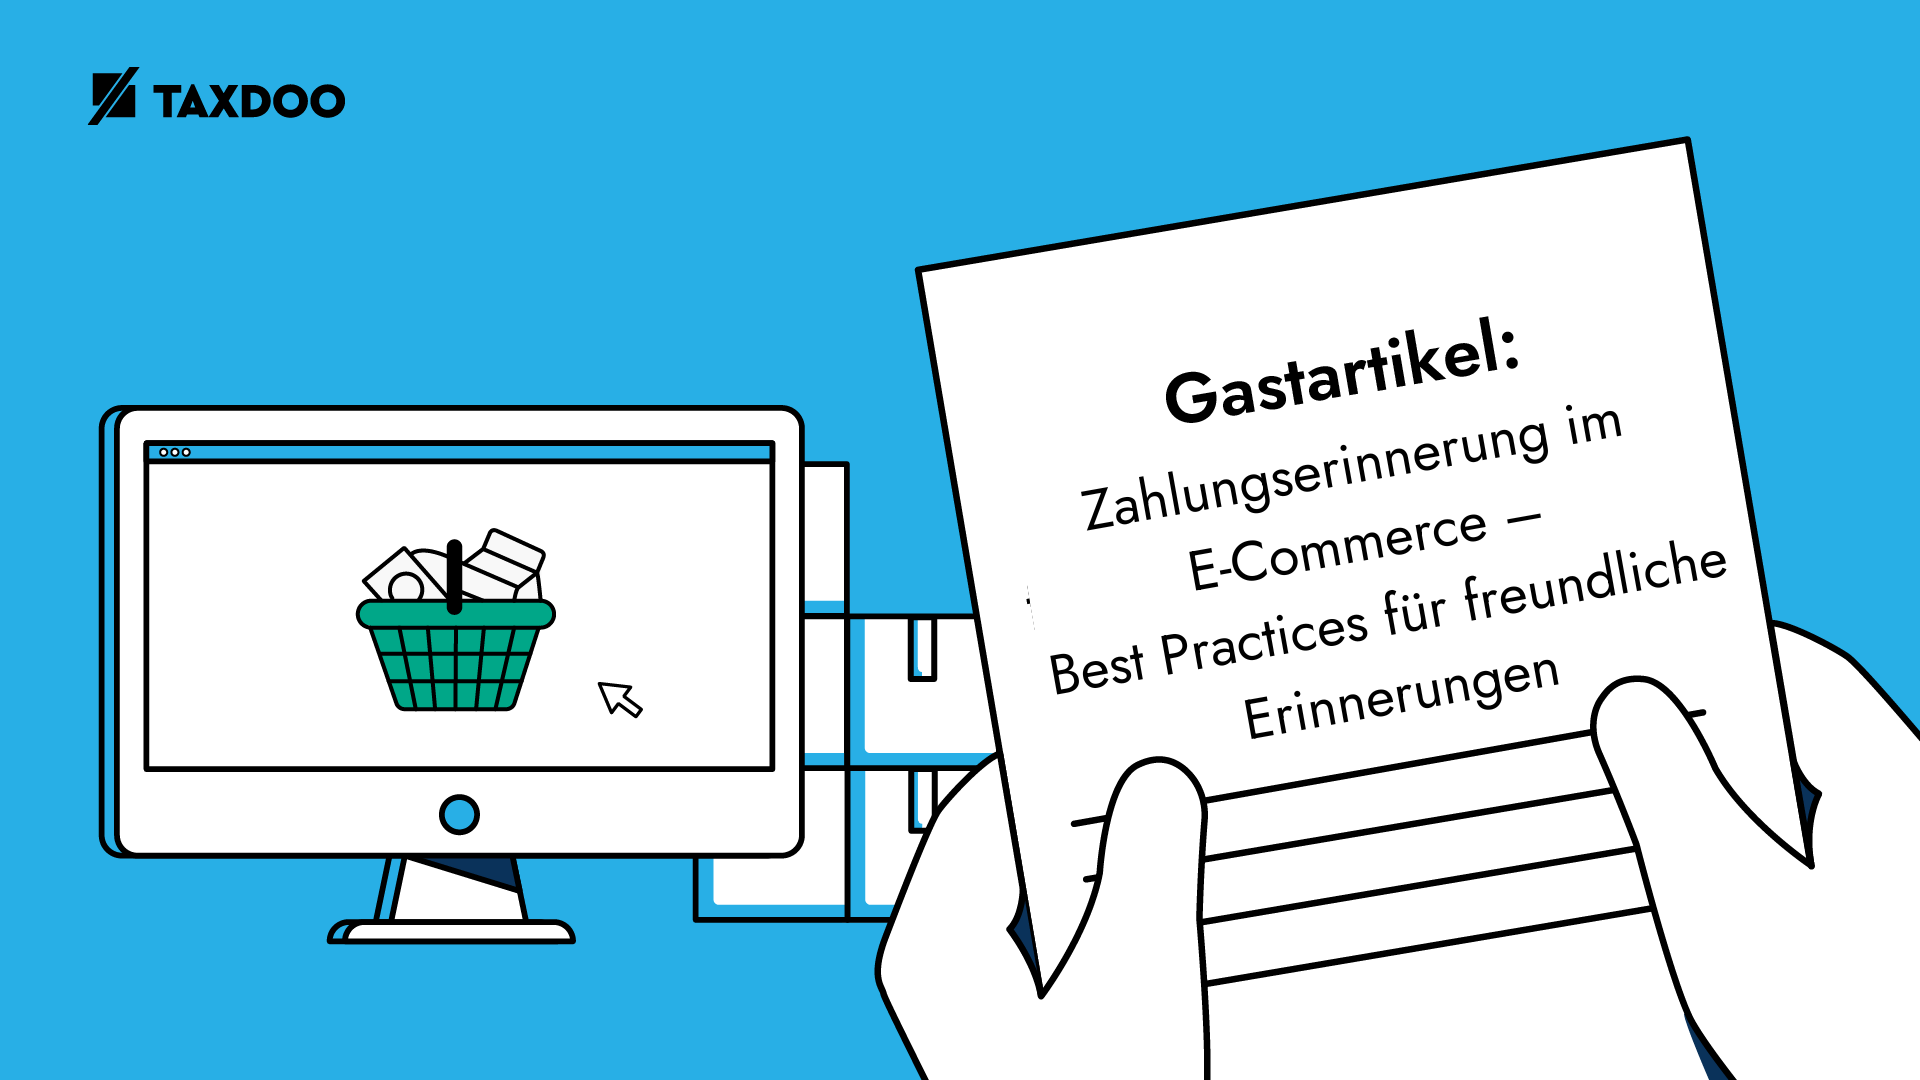 Gastartikel: Zahlungserinnerung im E-Commerce – Best Practices für freundliche Erinnerungen